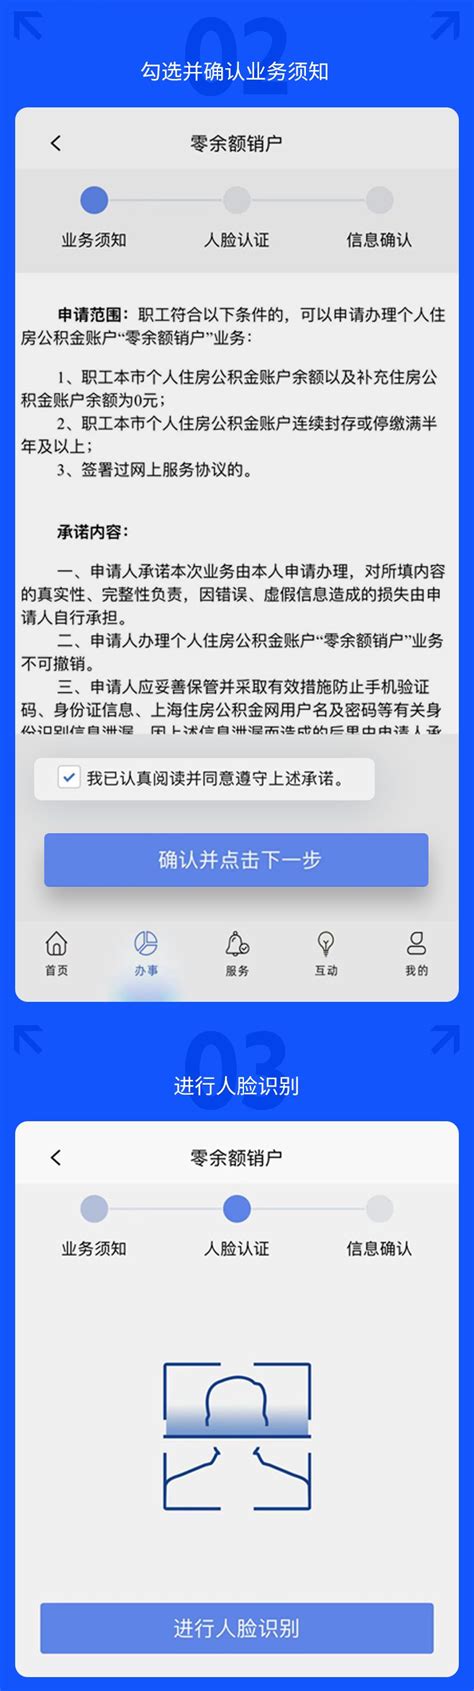 上海个人住房公积金账户销户网上办理流程- 上海本地宝